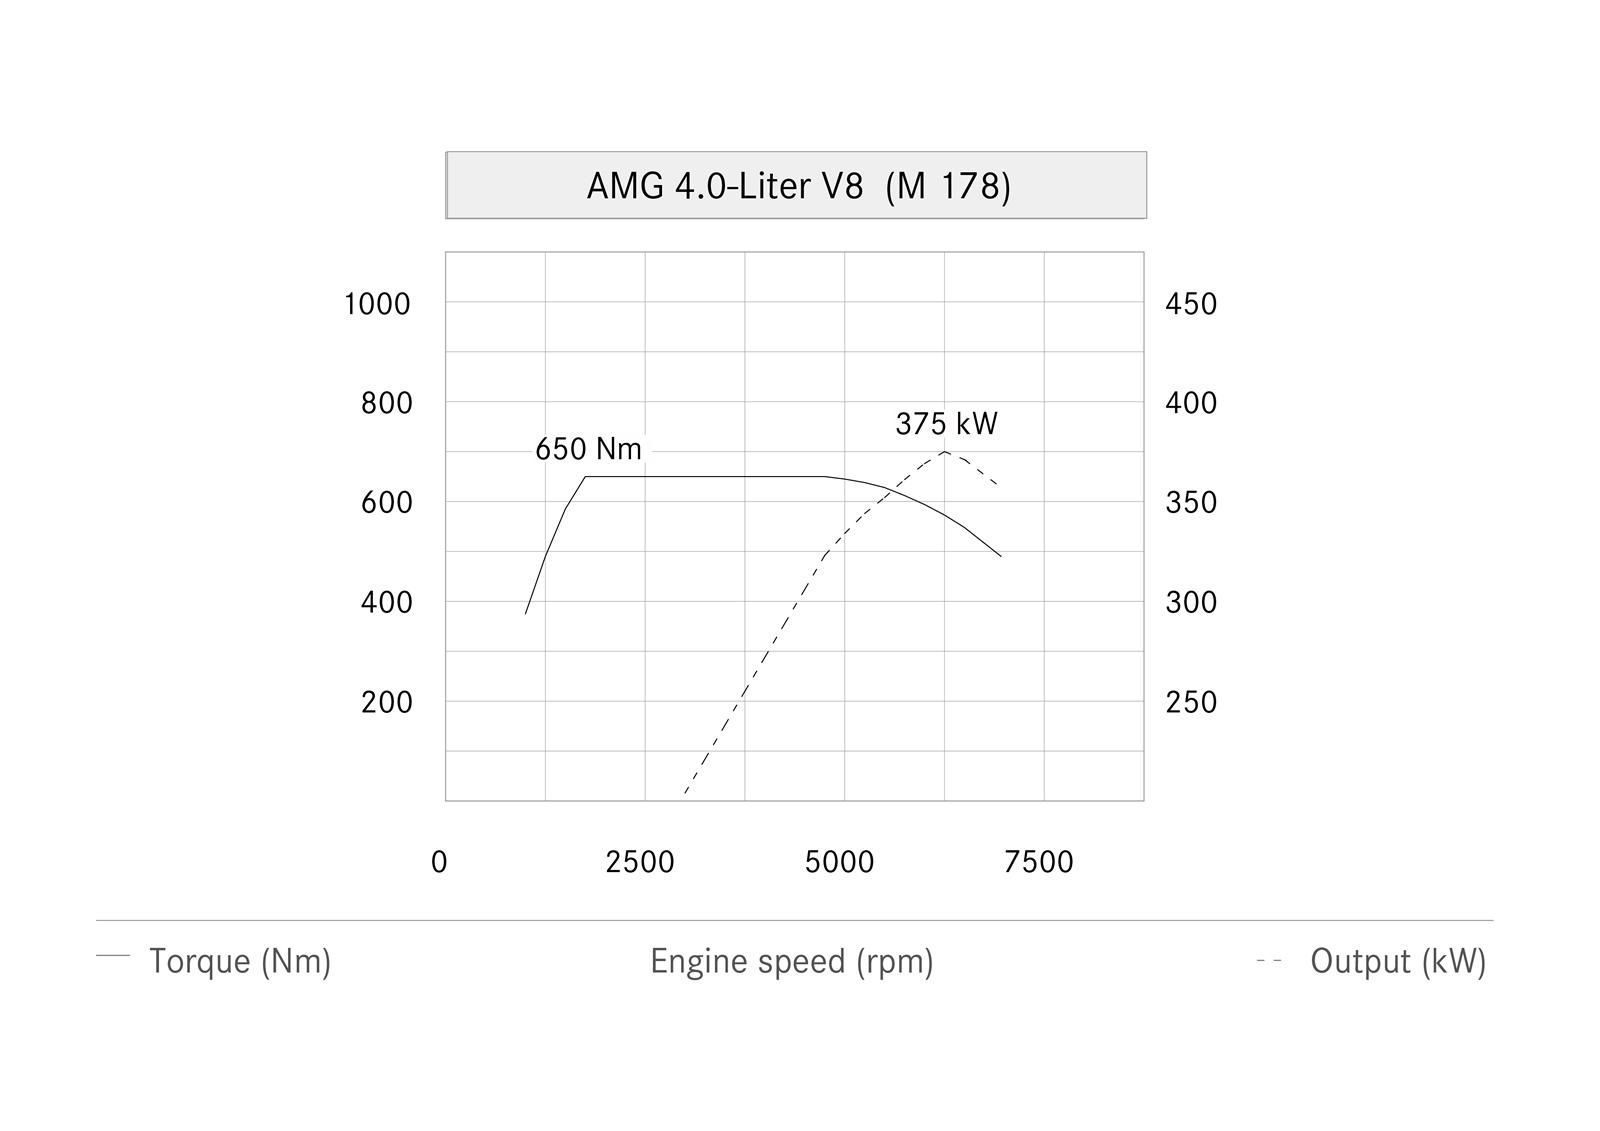 MERCEDES AMG GT 4.0 V8 MOTOR RESM GALERS